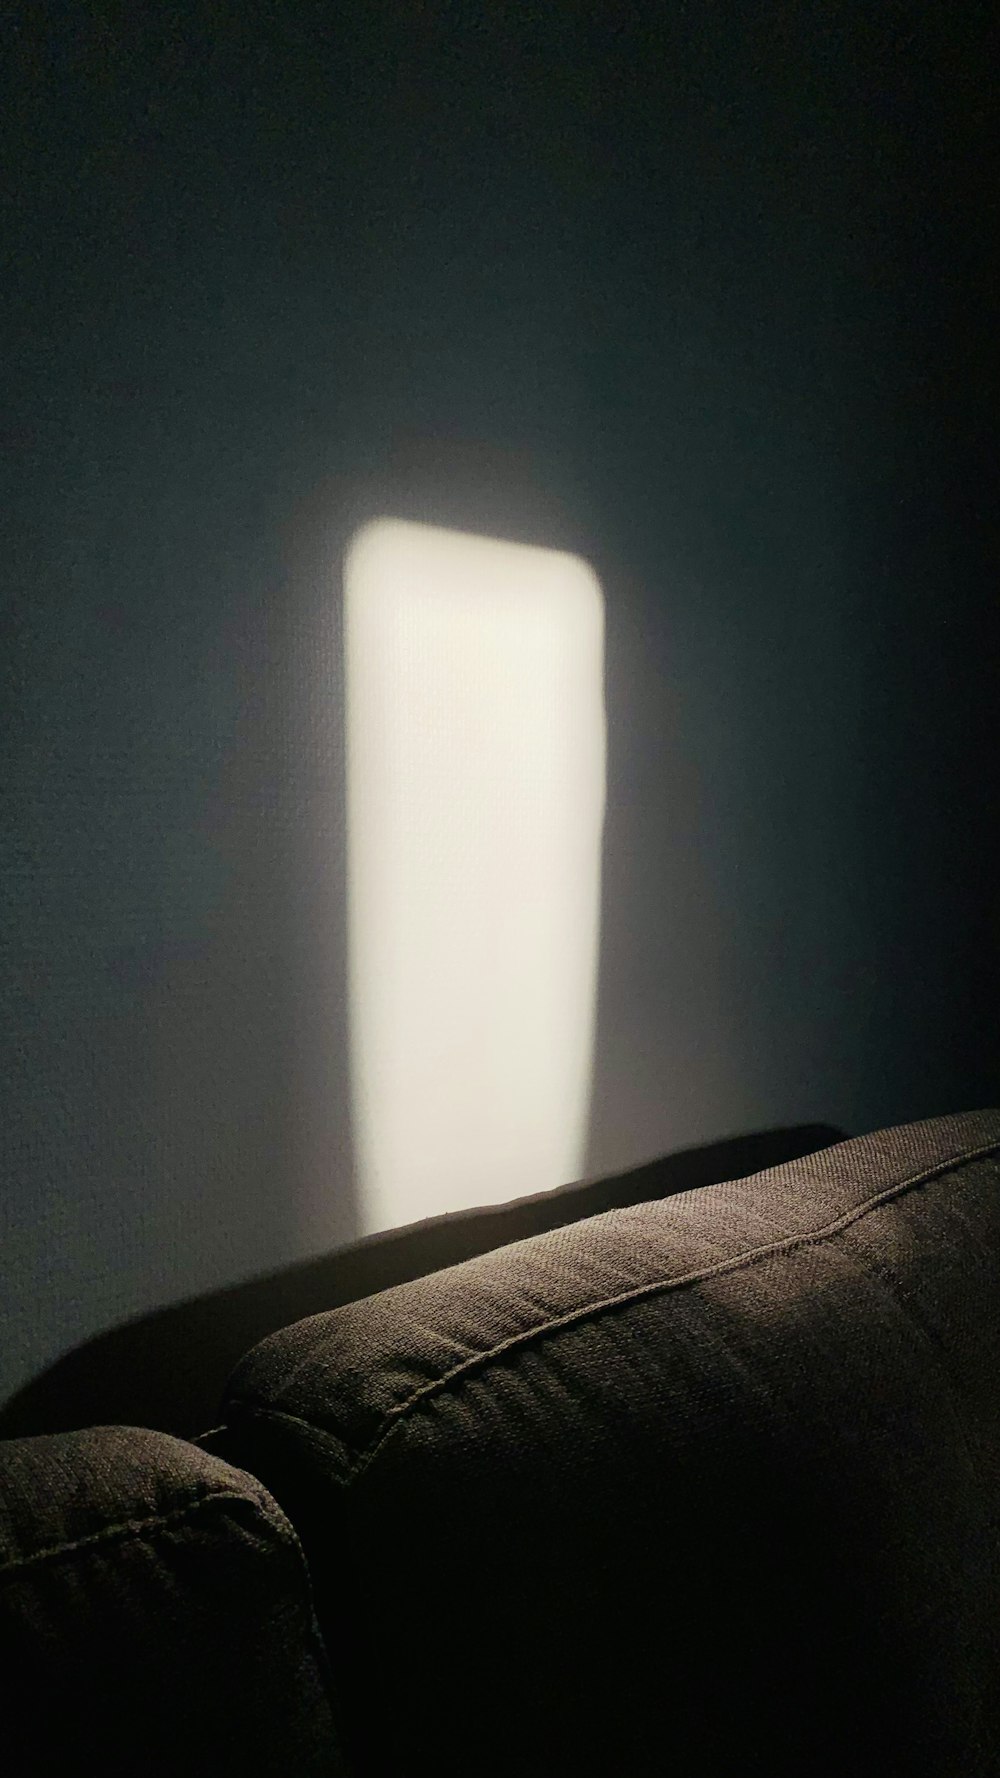 Una stanza buia con una luce che entra dalla finestra foto – Francia  Immagine gratuita su Unsplash